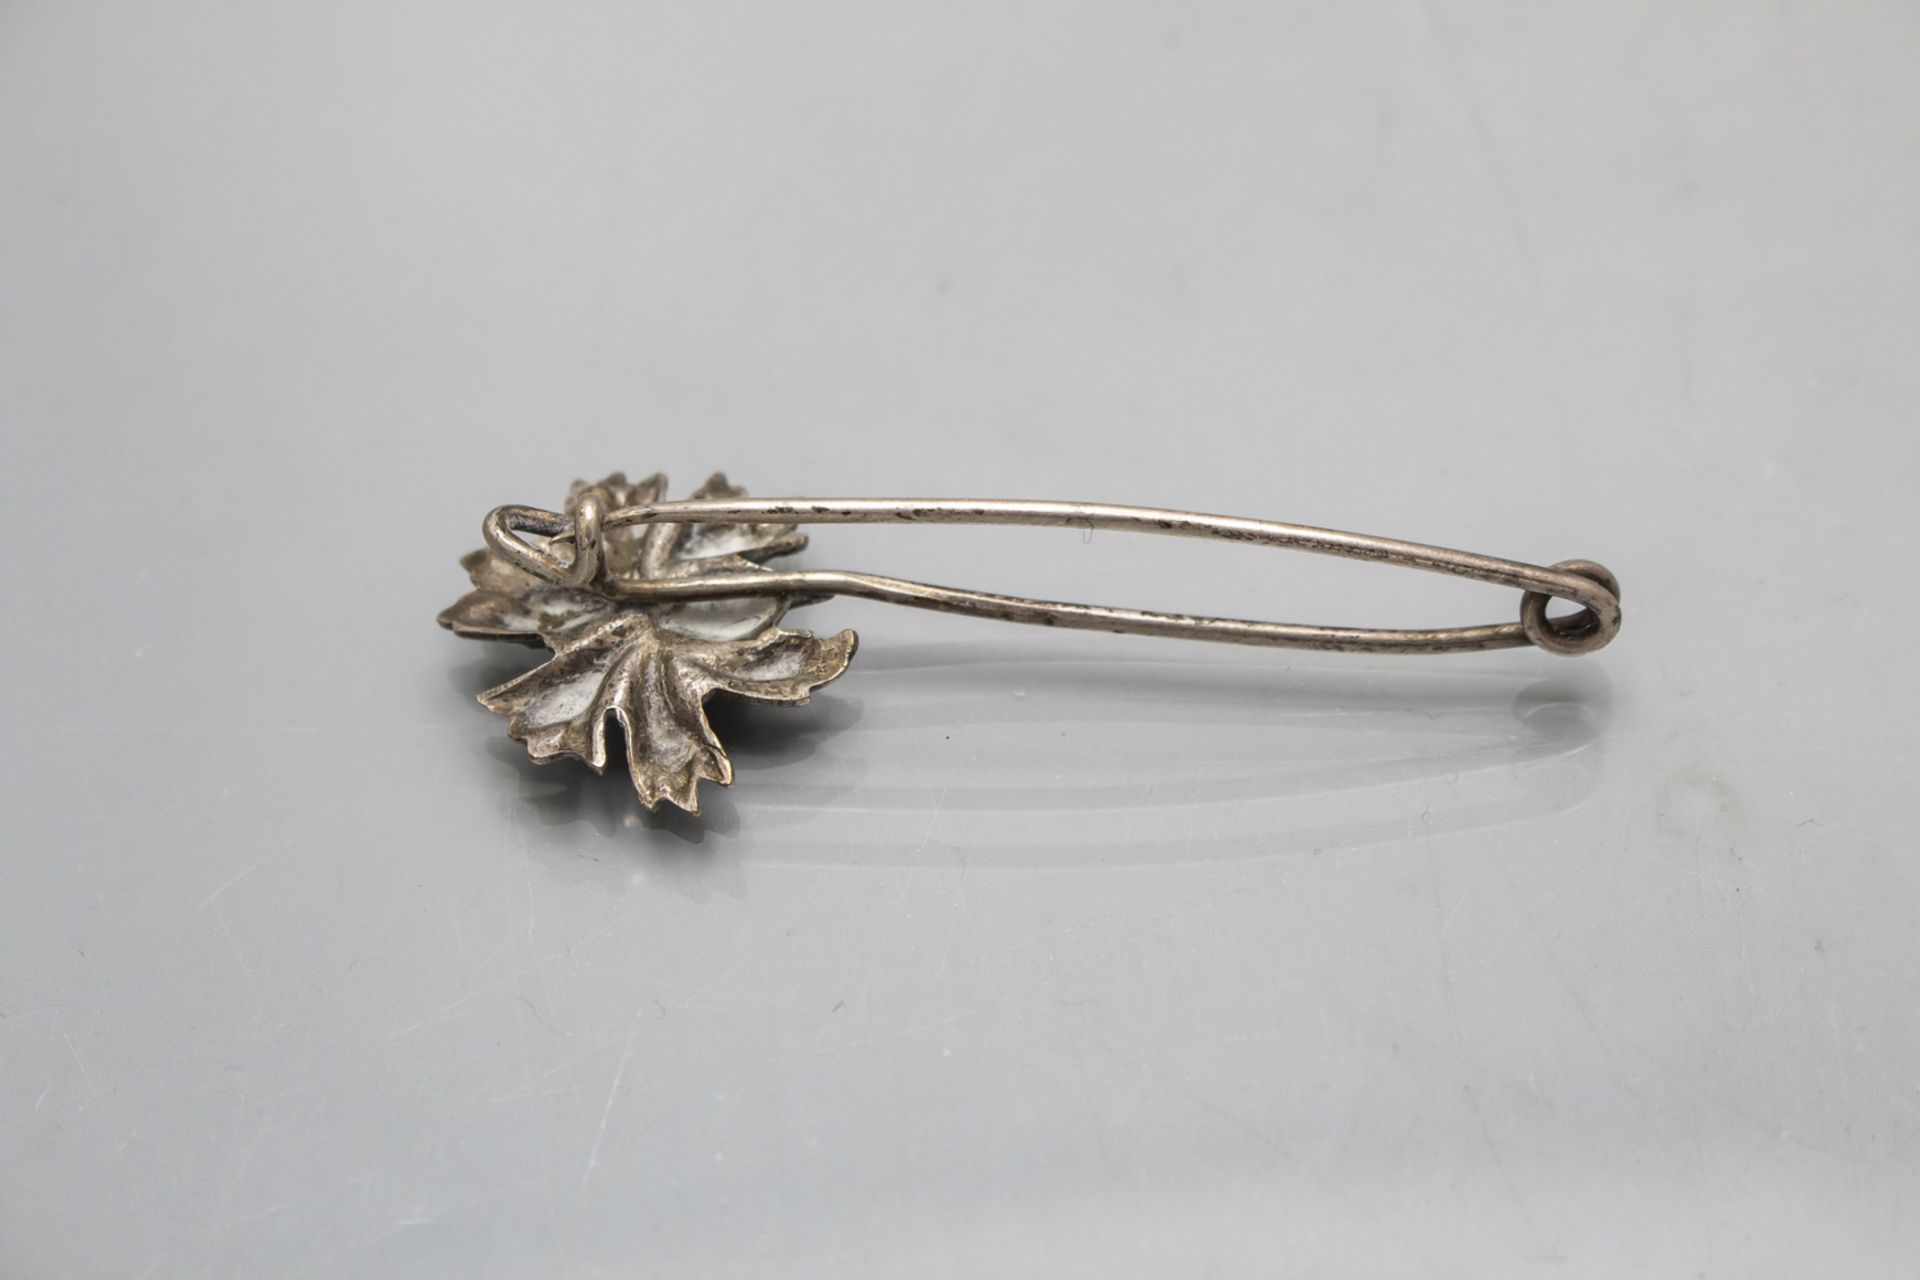 Jugendstil Brosche / Nadel mit einer Kornblume / An Art Nouveau brooch with a corn flower, um 1900 - Image 2 of 2